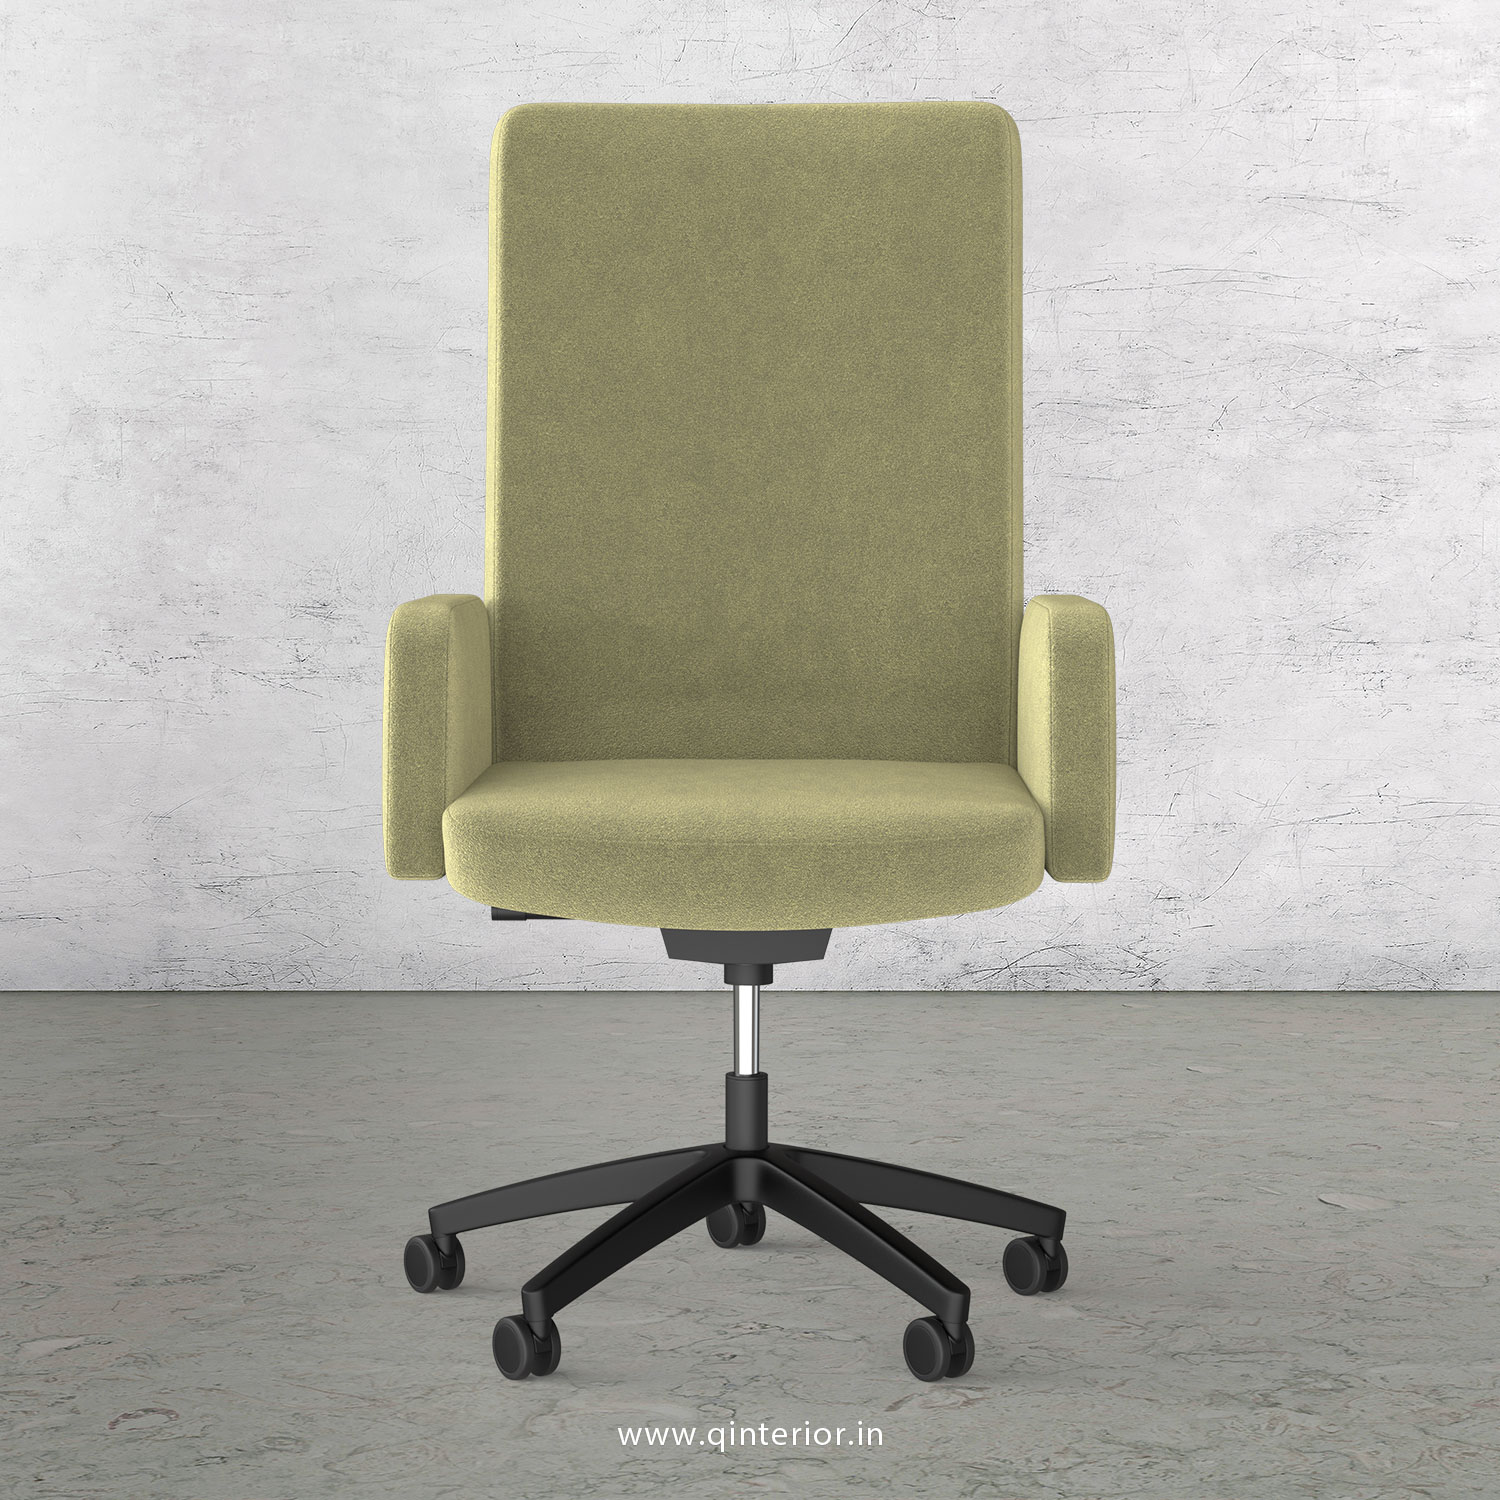 Office ArmRest Chair in Velvet Leather - OEC001